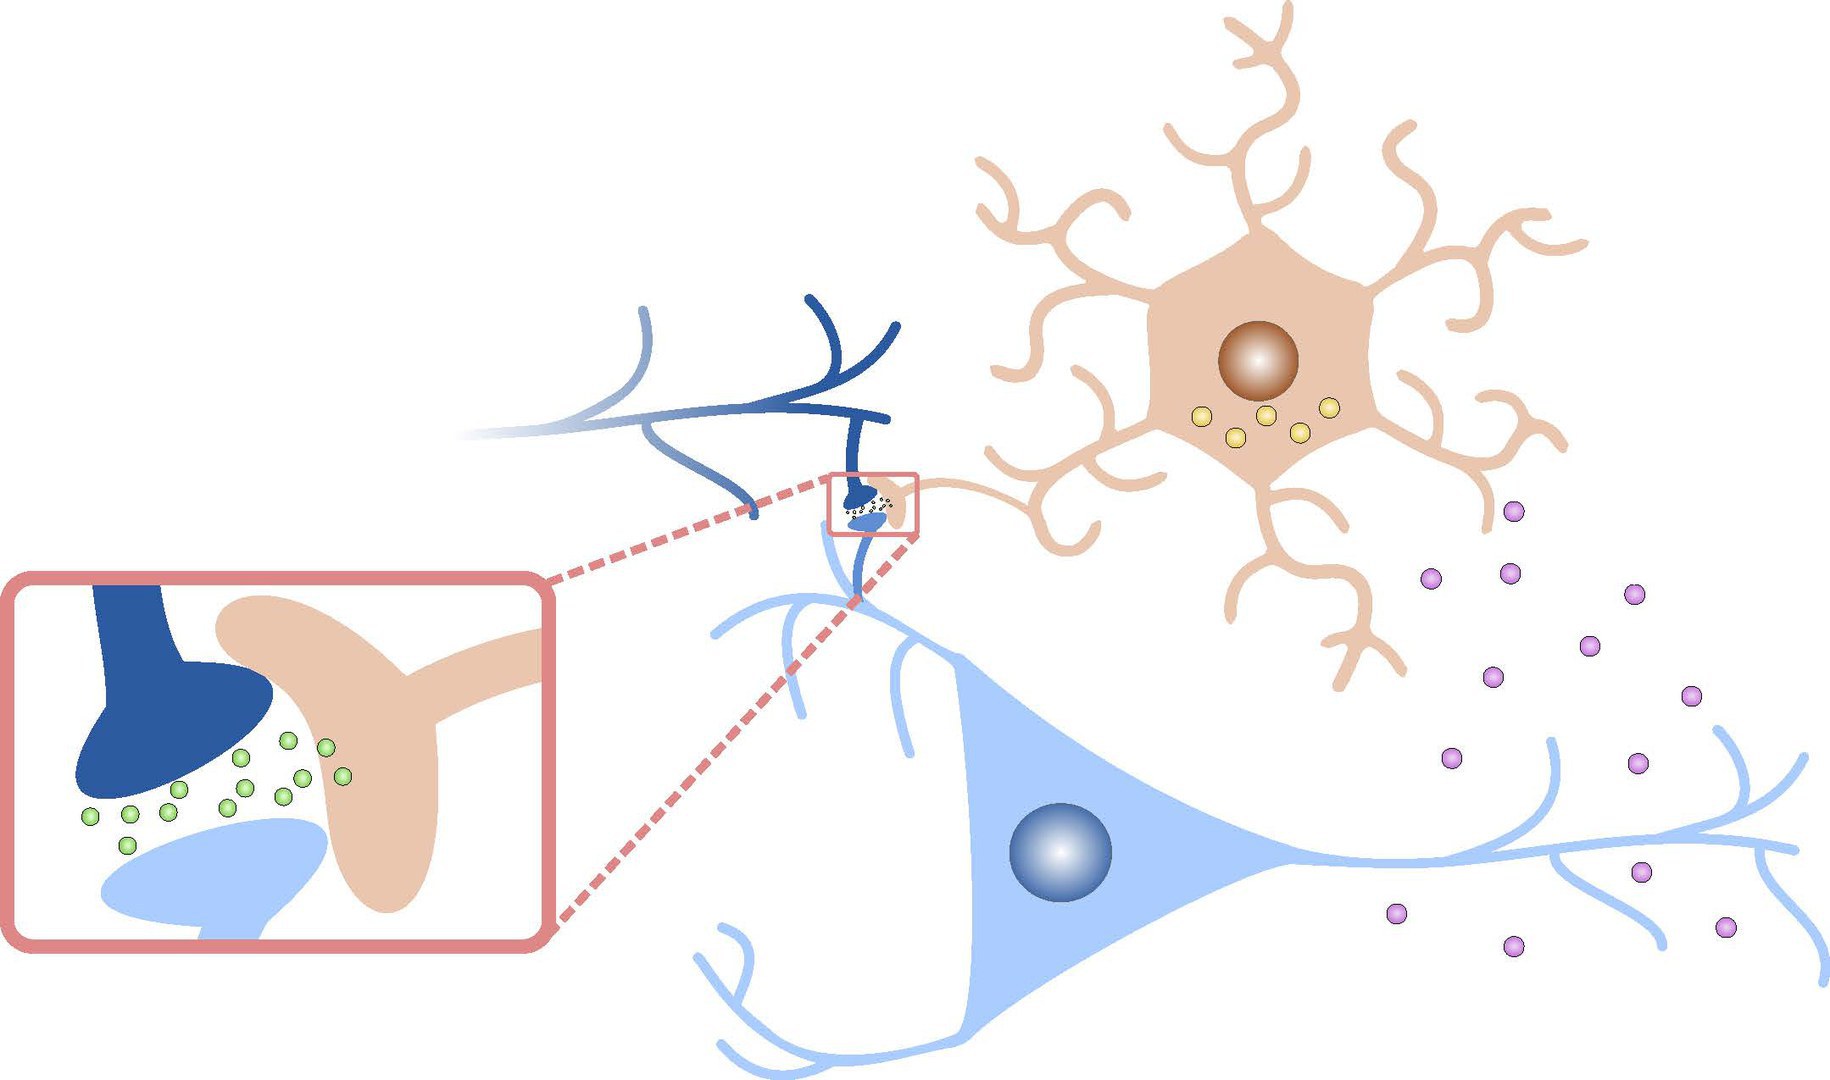 Das Modell erweitert die Kommunikation - zwischen zwei Neuronen um einen dritten Akteur, den Astrozyten. Endocannabinoide vom postsynaptischen Neuron binden an Astrozytenrezeptoren und verändern die D-Serin-Konzentration, die die Empfindlichkeit der Synapse steuert.